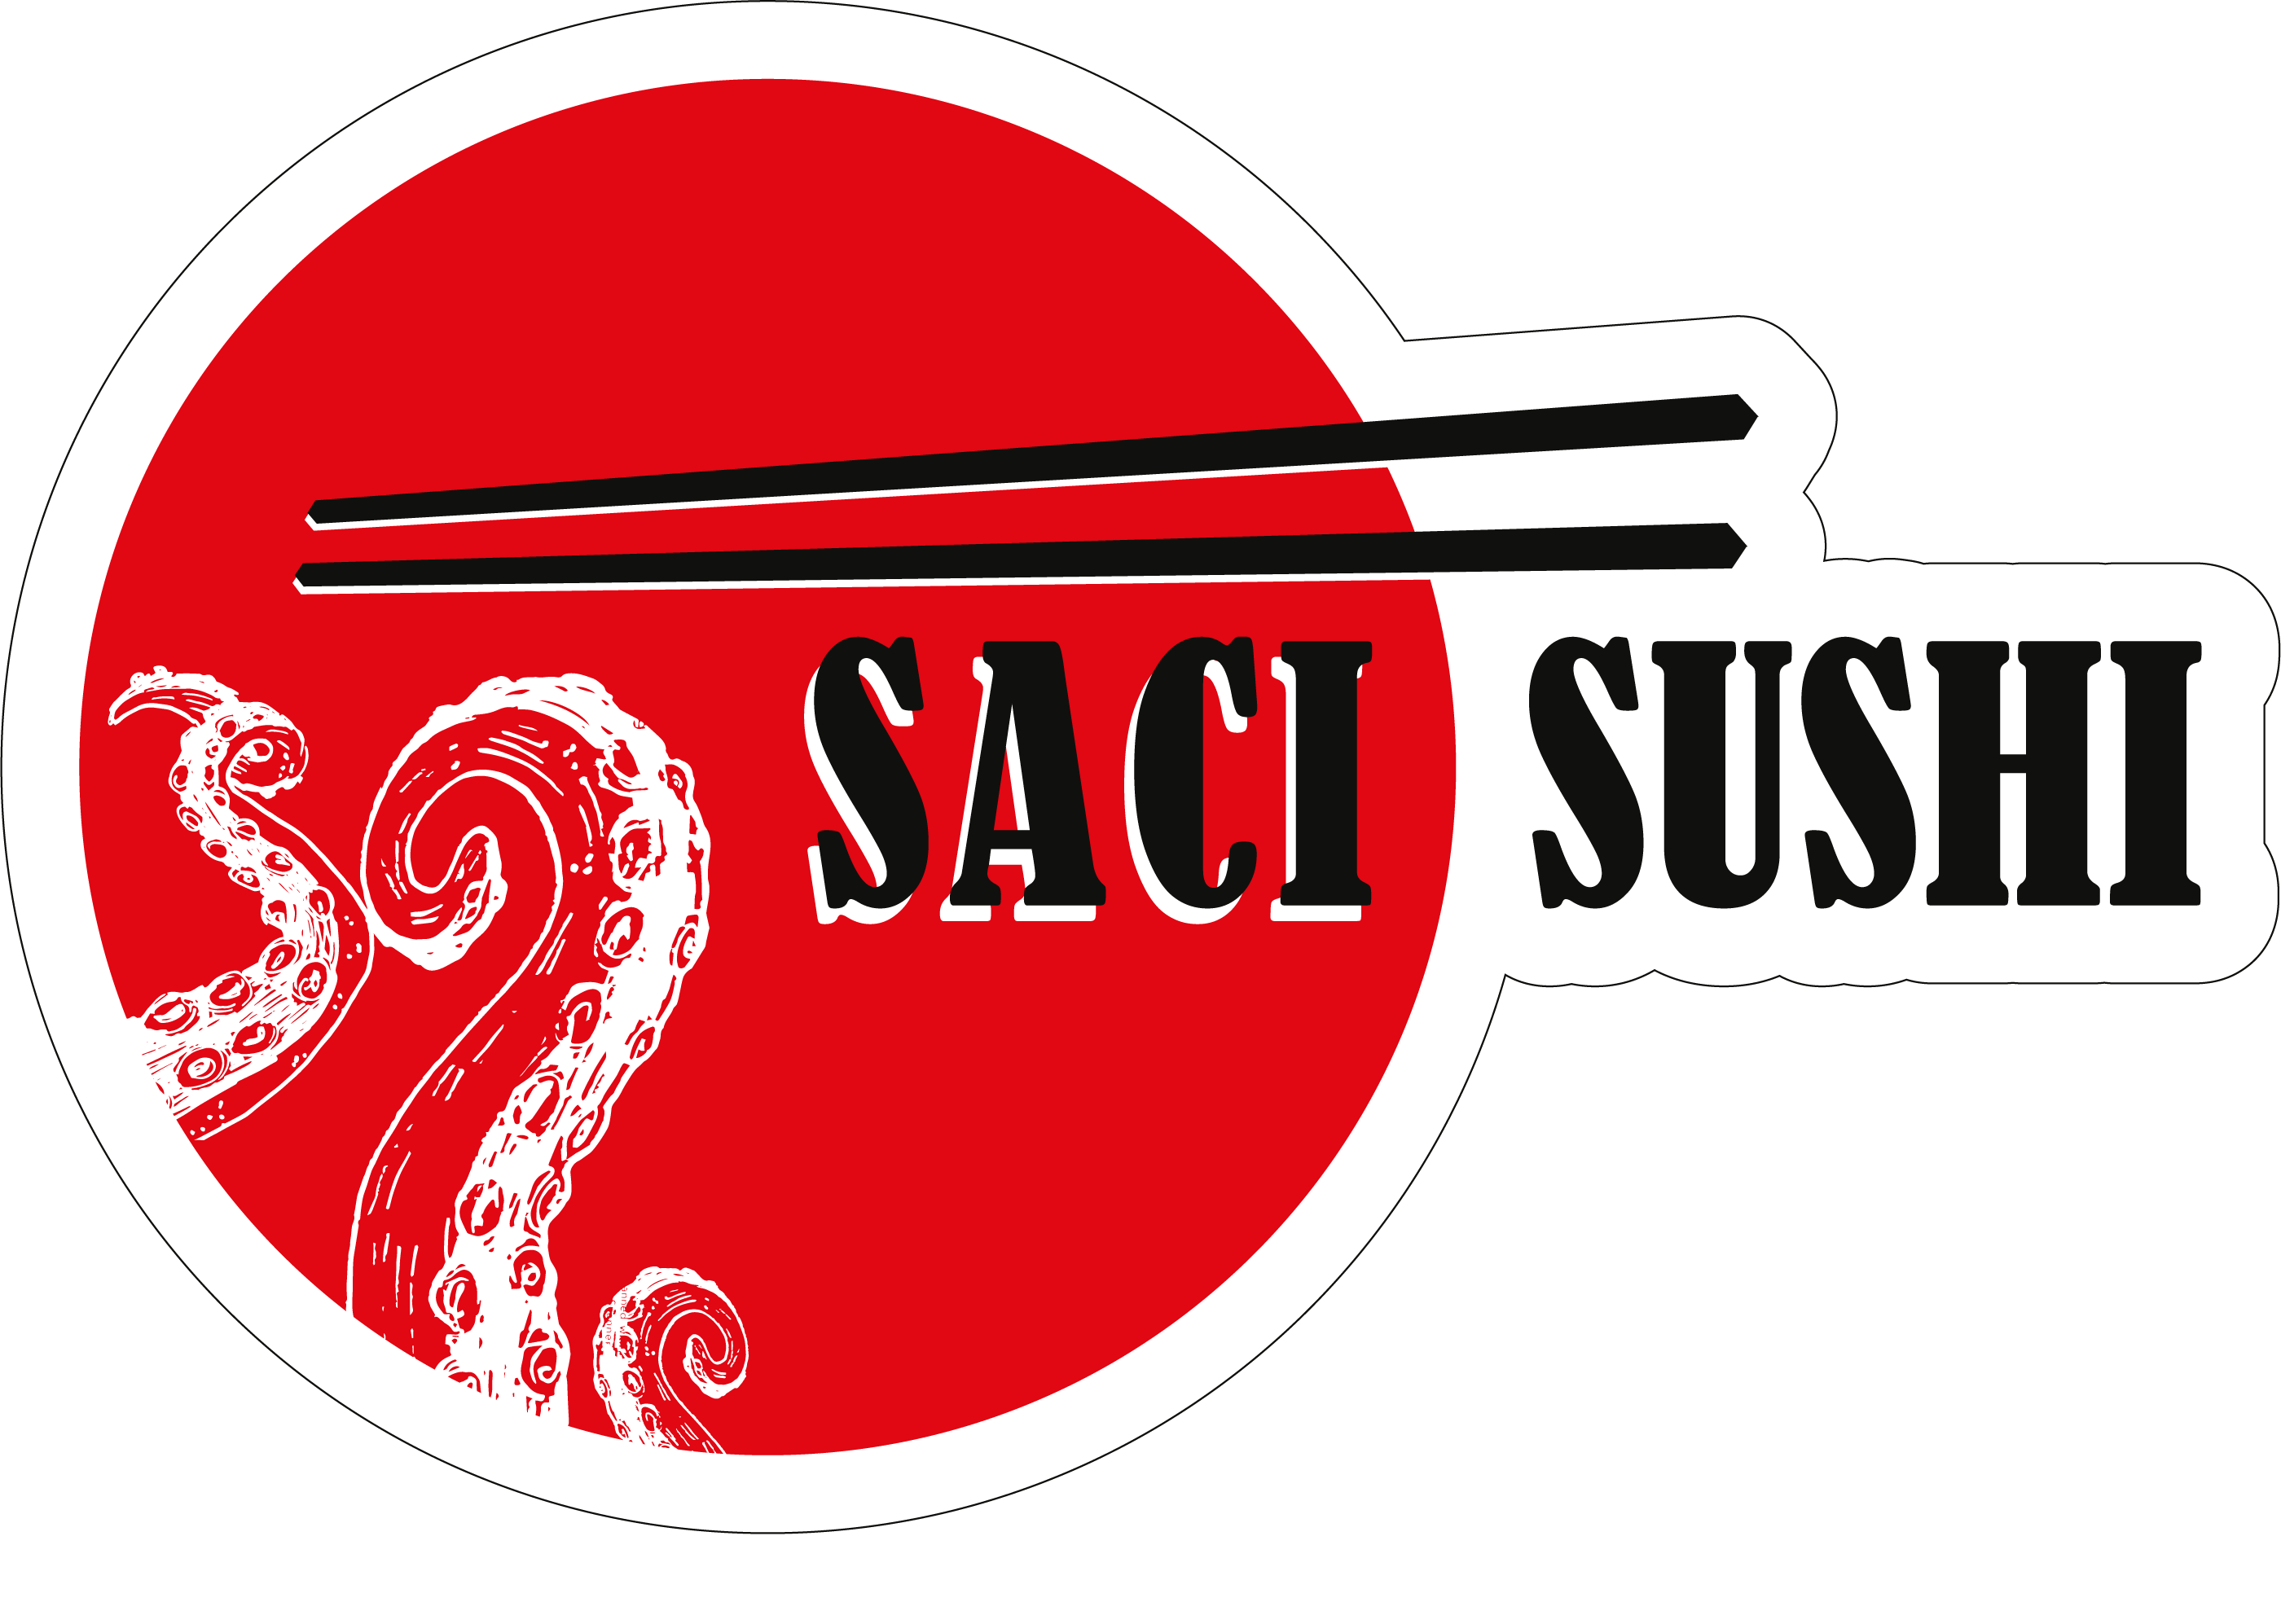 Saci Sushi